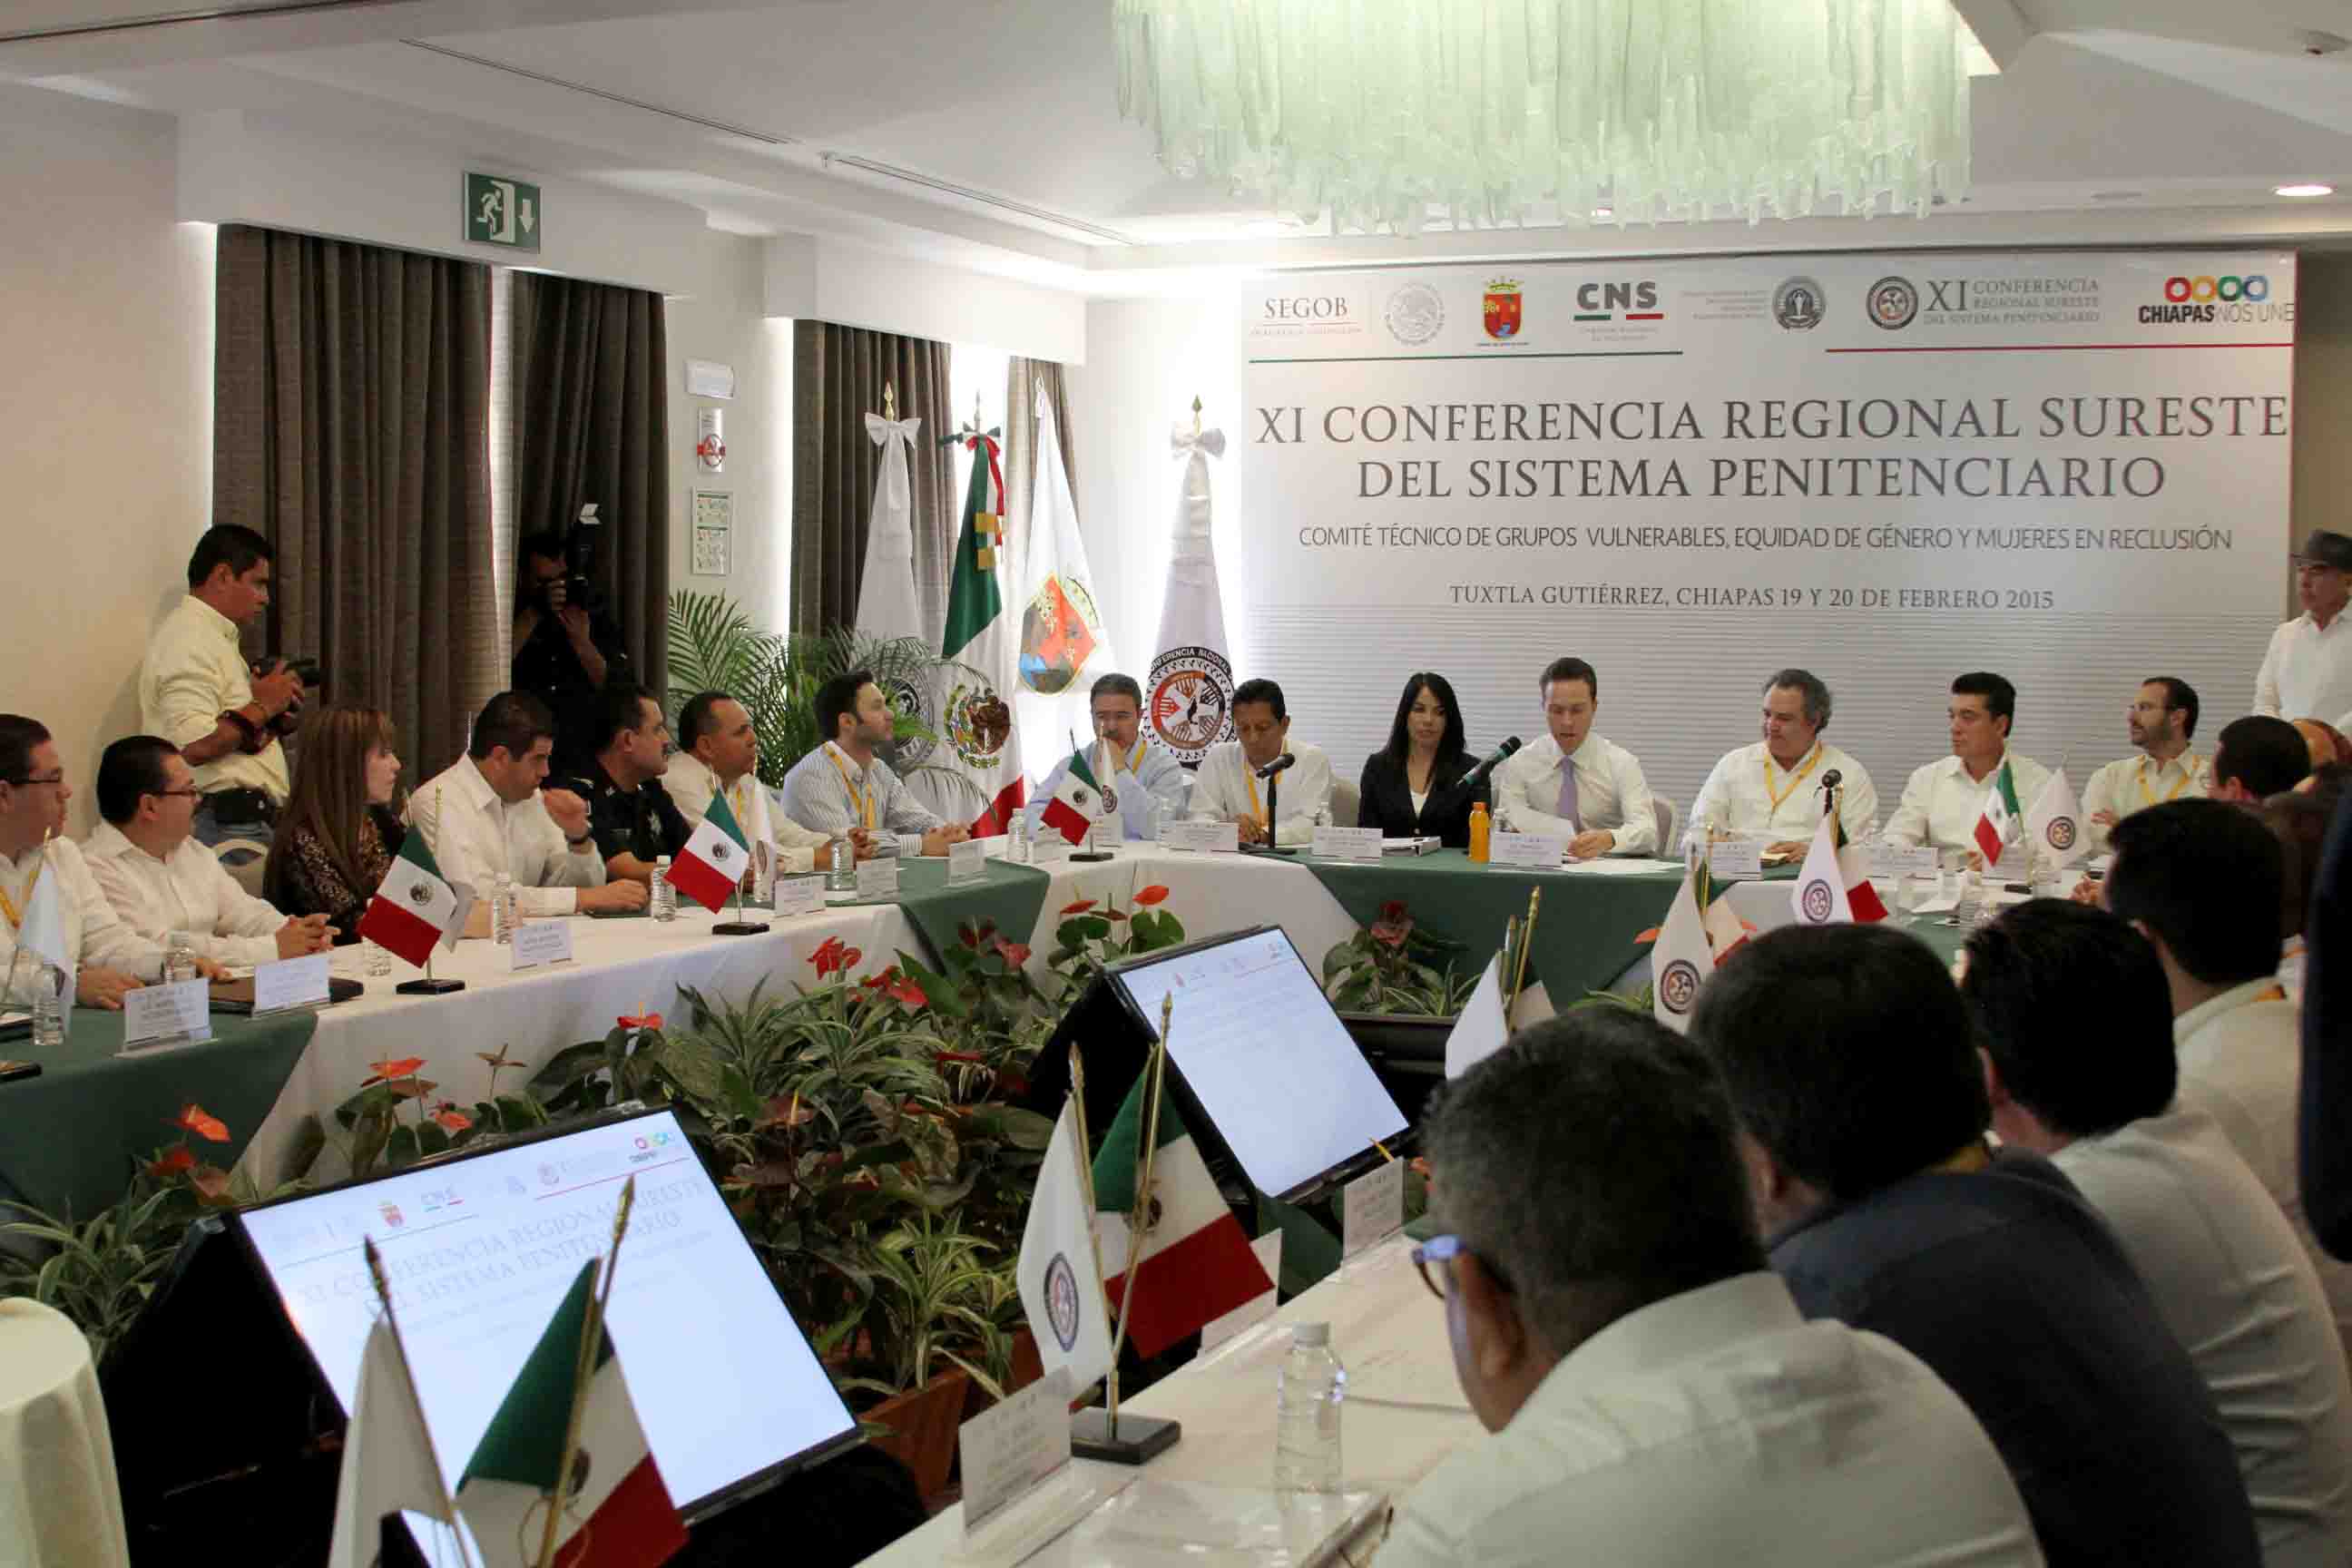 Presenta SSyPC 5 ejes del actual Sistema Penitenciario de Chiapas, ante la XI Conferencia Regional Sureste